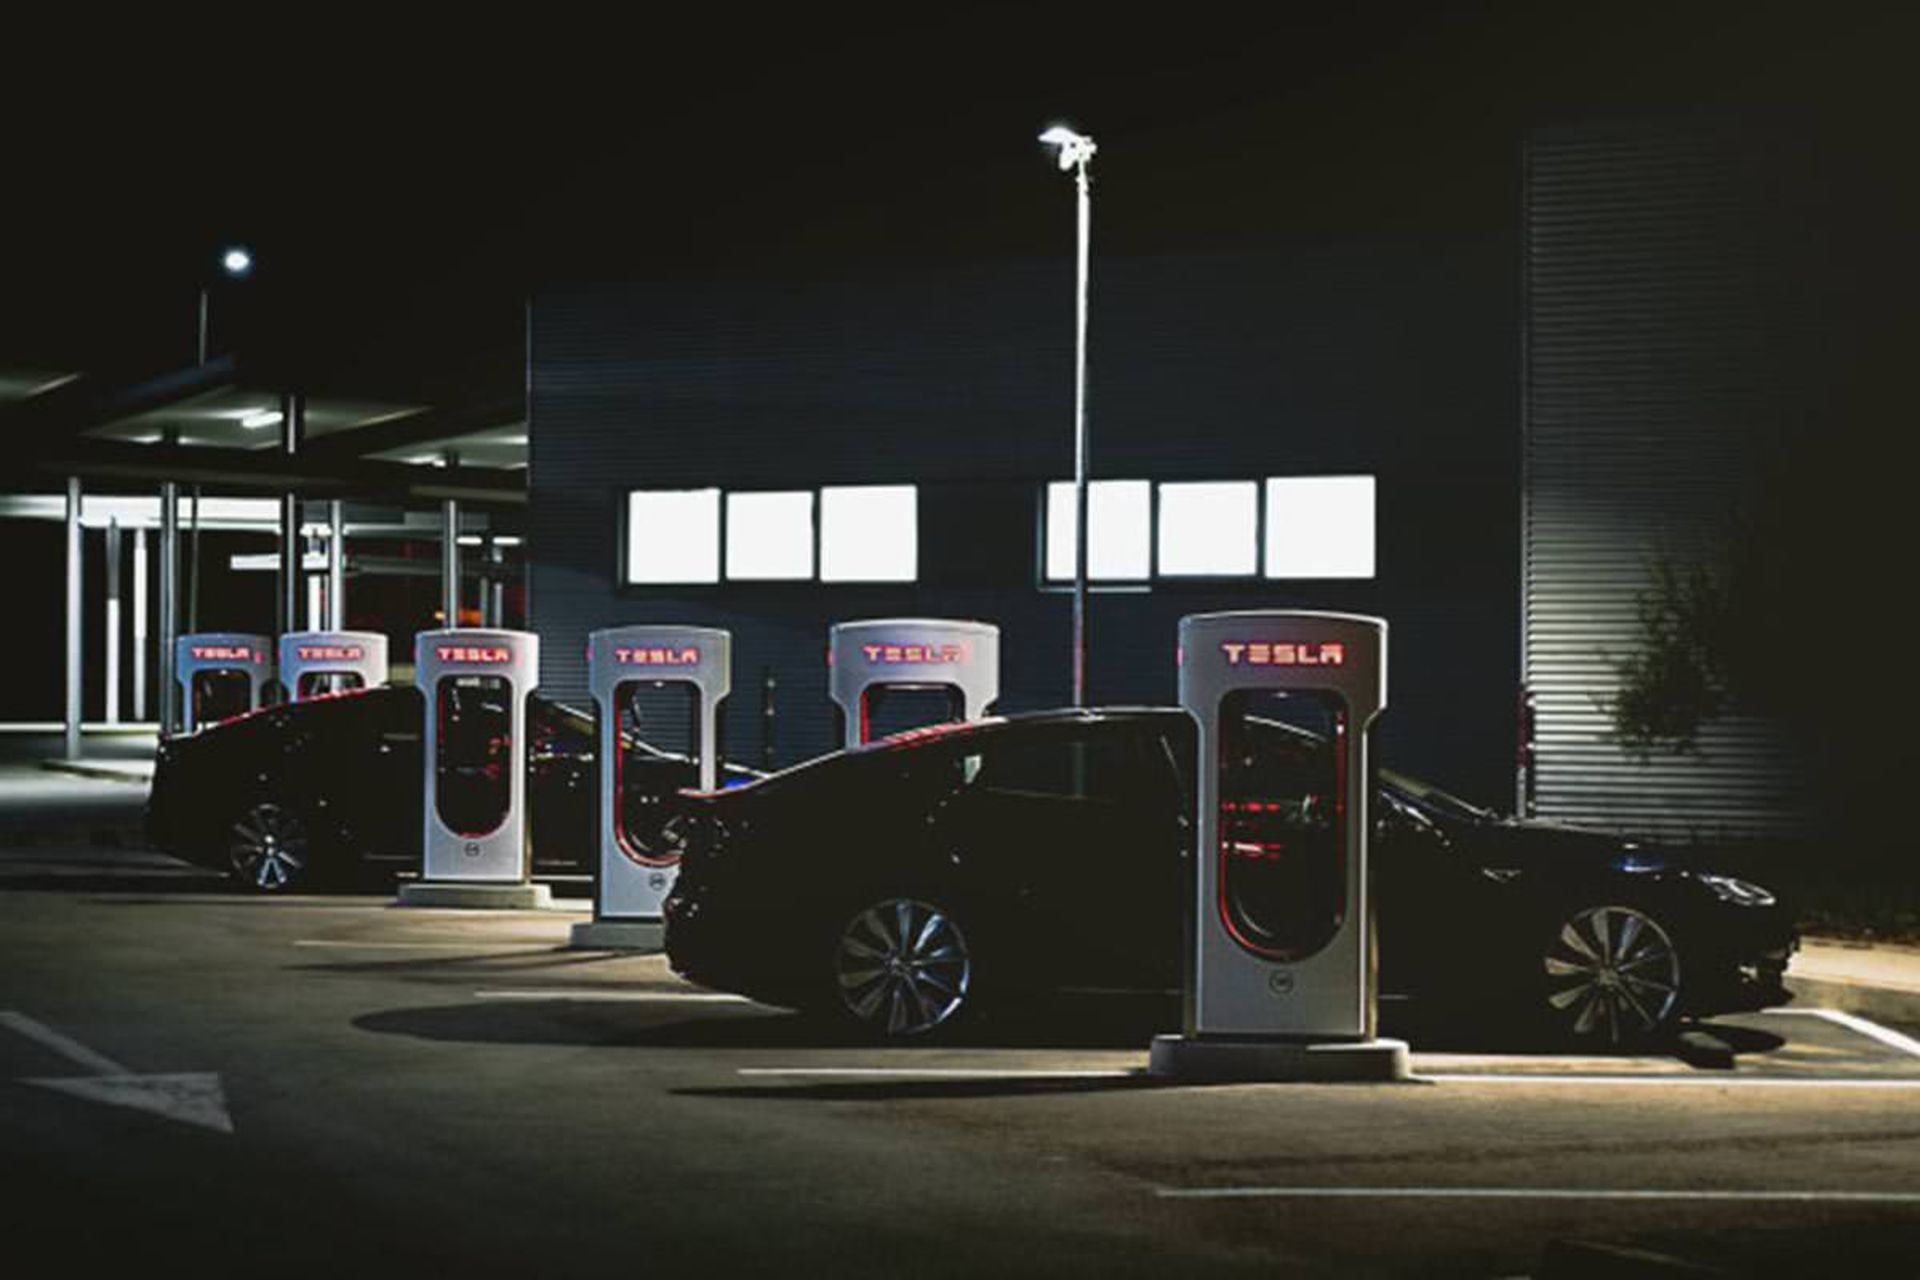 مرجع متخصصين ايران خودروي الكتريكي / electric car تسلا / tesla در كنار شارژر / car charger در شب